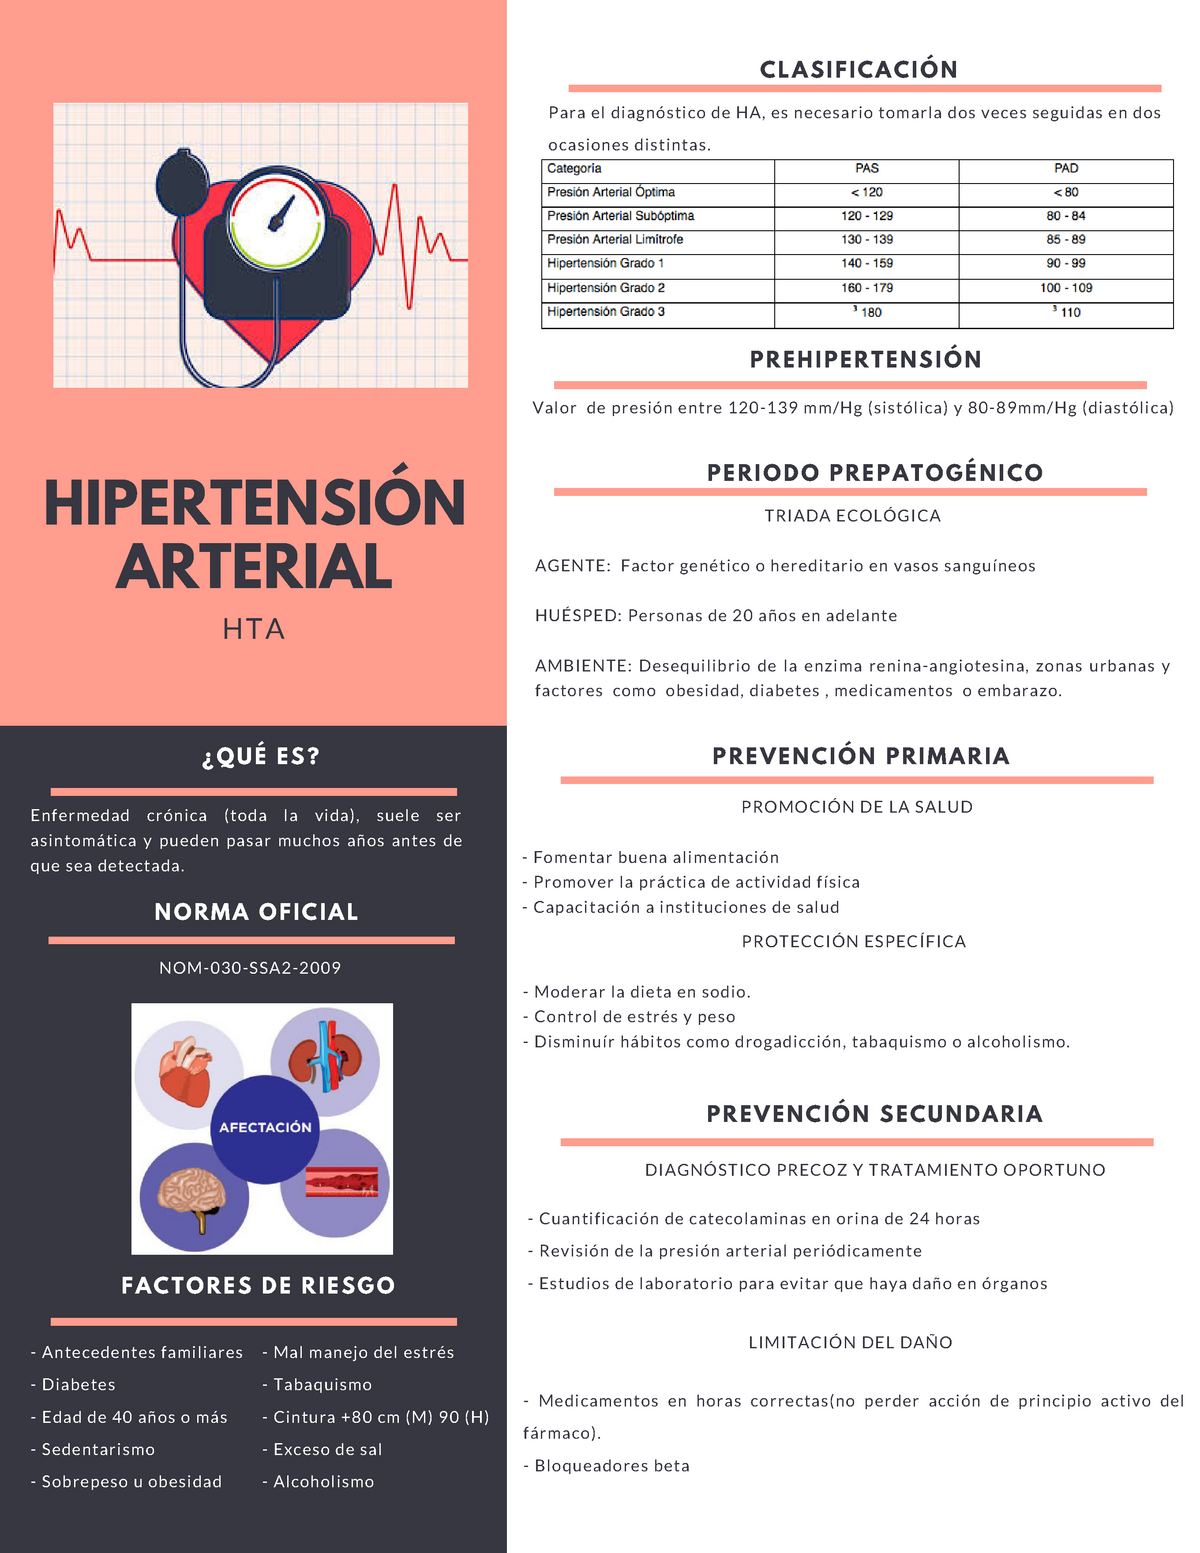 Hipertension Arterial Qu Es Enfermedad Cr Nica Toda La Vida Suele Ser Asintom Studocu